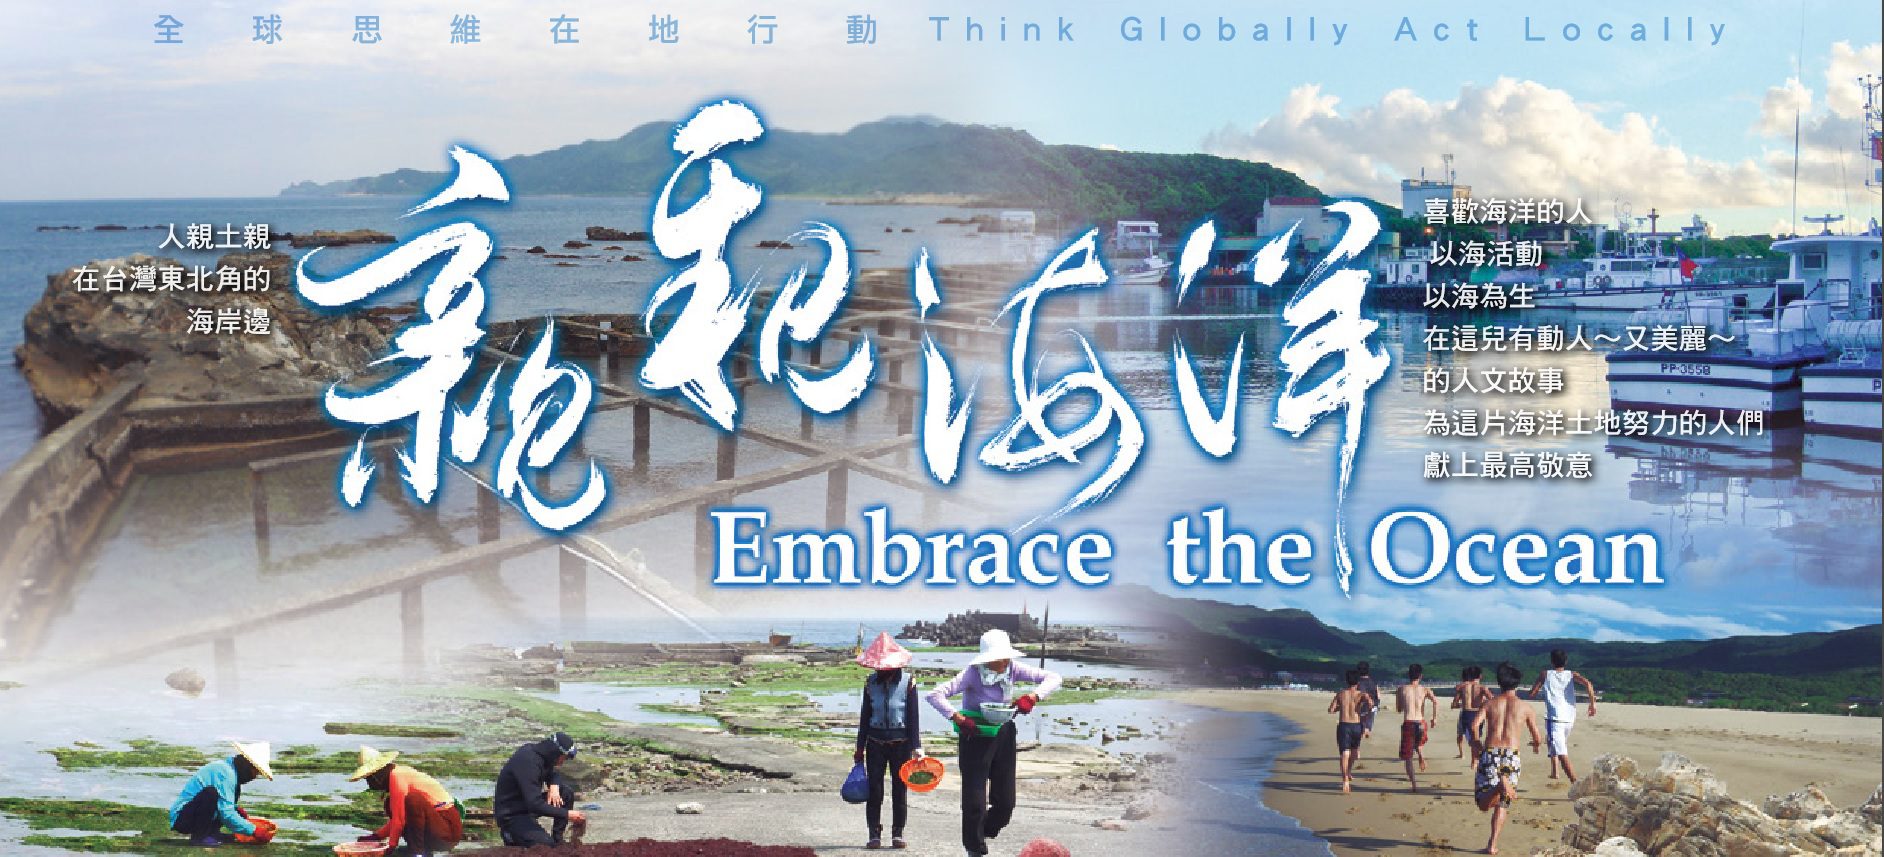 海科館「藻之道」共同探索台灣海女與海藻文化   3/12活動登場+免費觀賞得獎紀錄片「親親海洋」